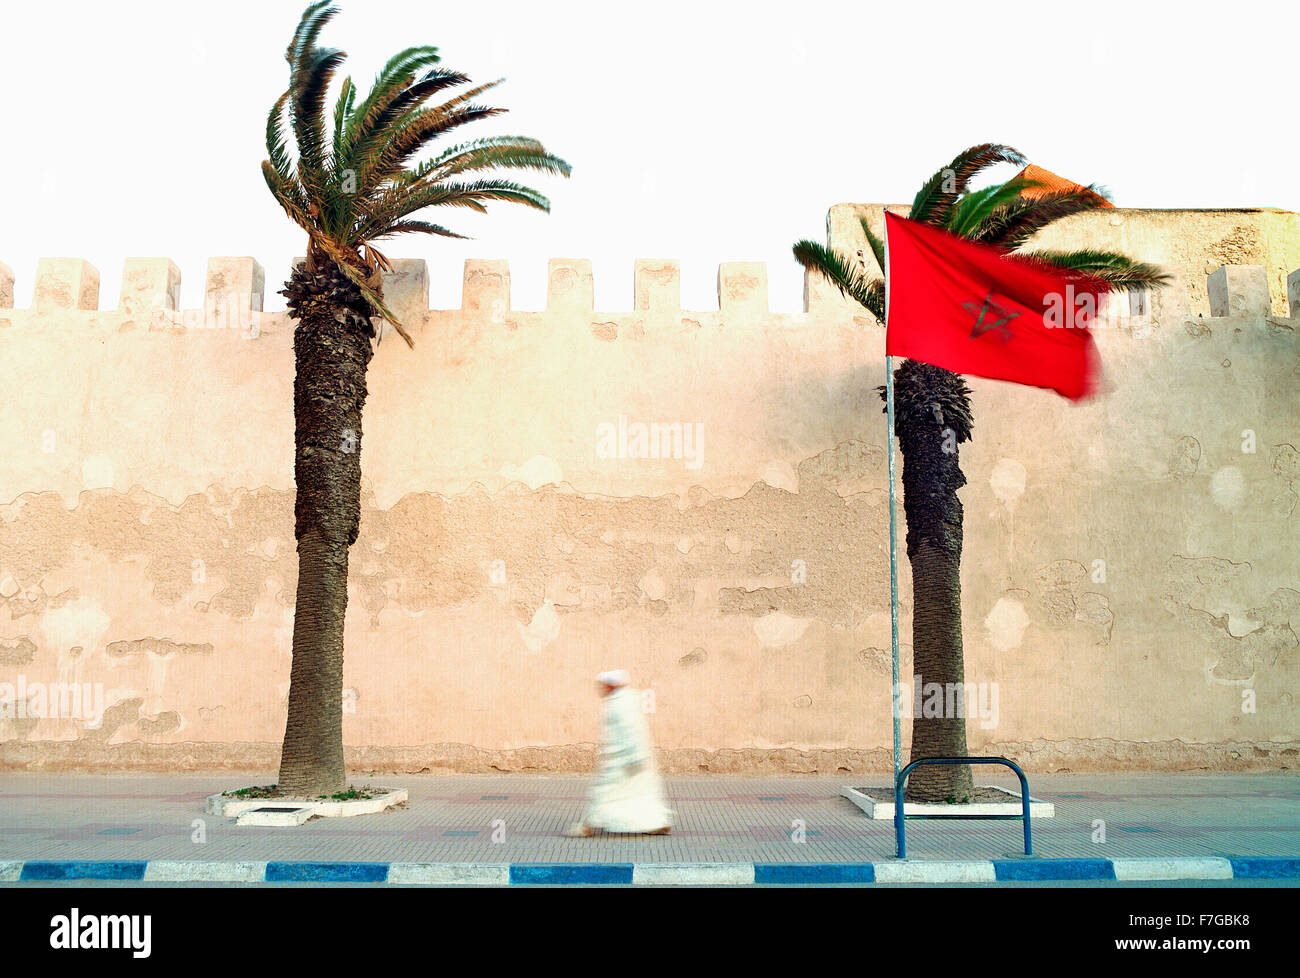 Ein marokkanischer Muslim geht zügig vorbei an der Stadtmauer auf seinem Weg zum Morgengebet. Essaouira, Marokko, Nordafrika. Stockfoto